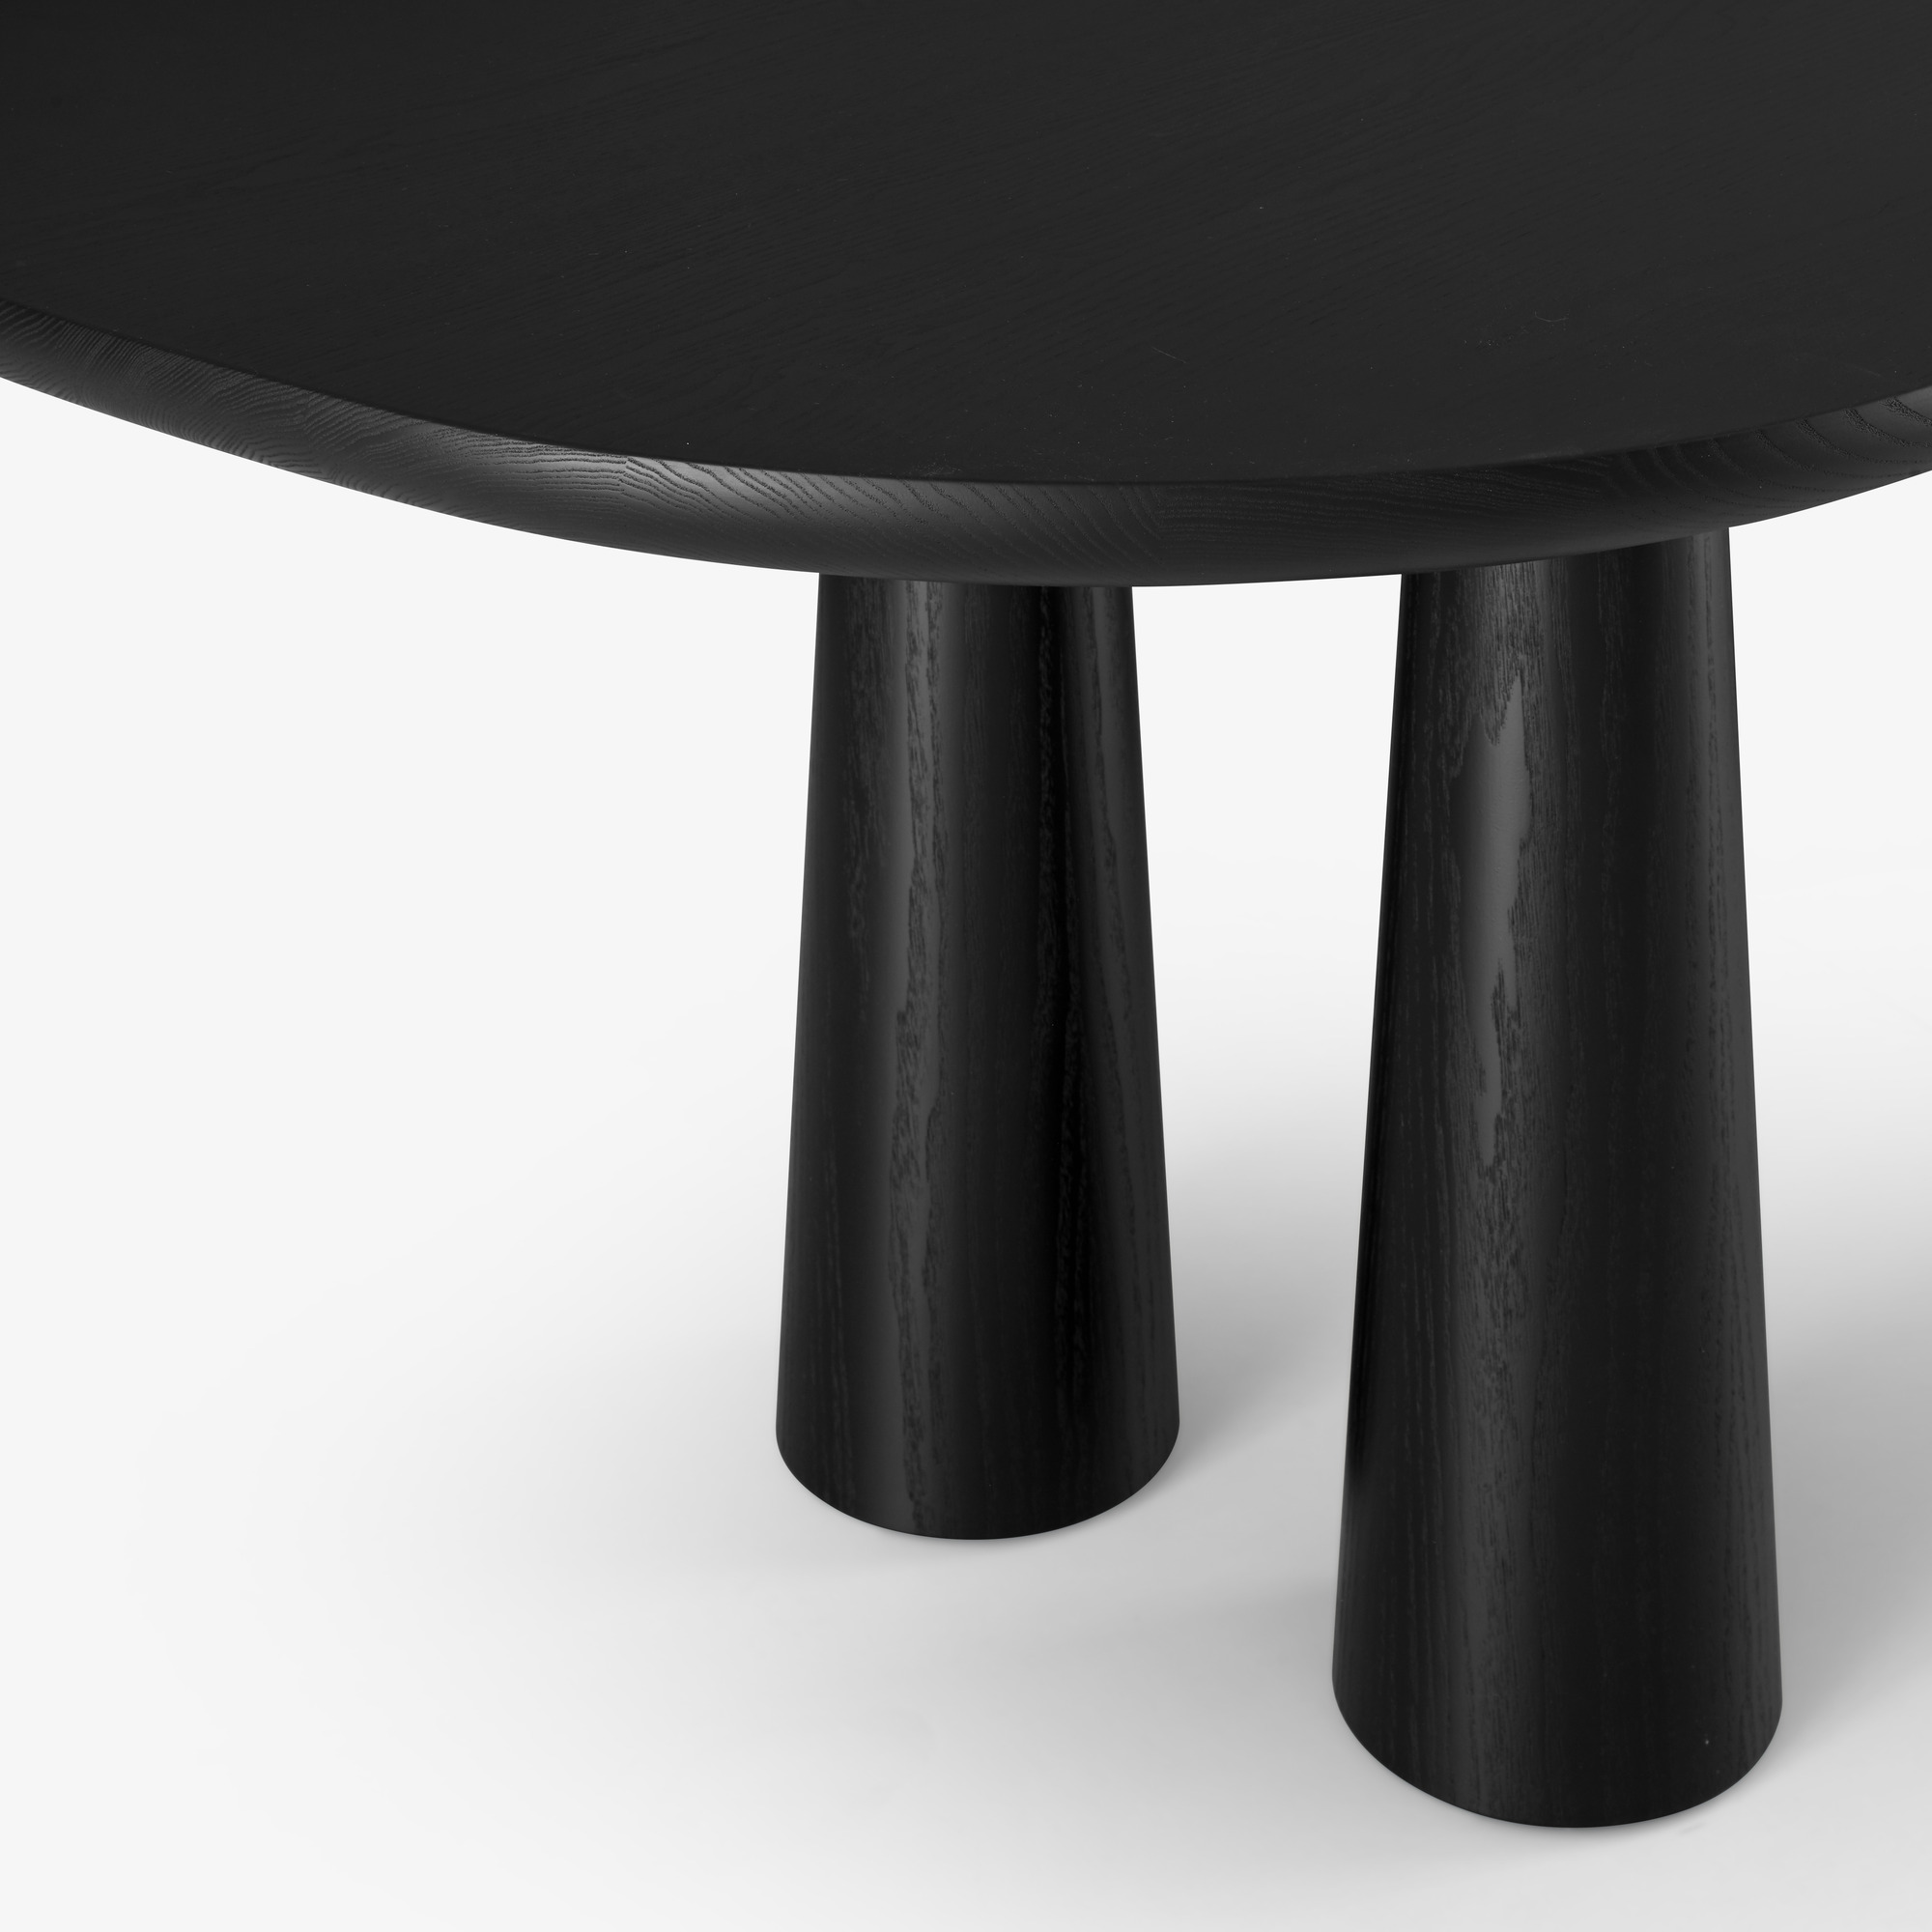 Image Mesa de comedor fresno teñido negro patas de fresno teñido negro 5